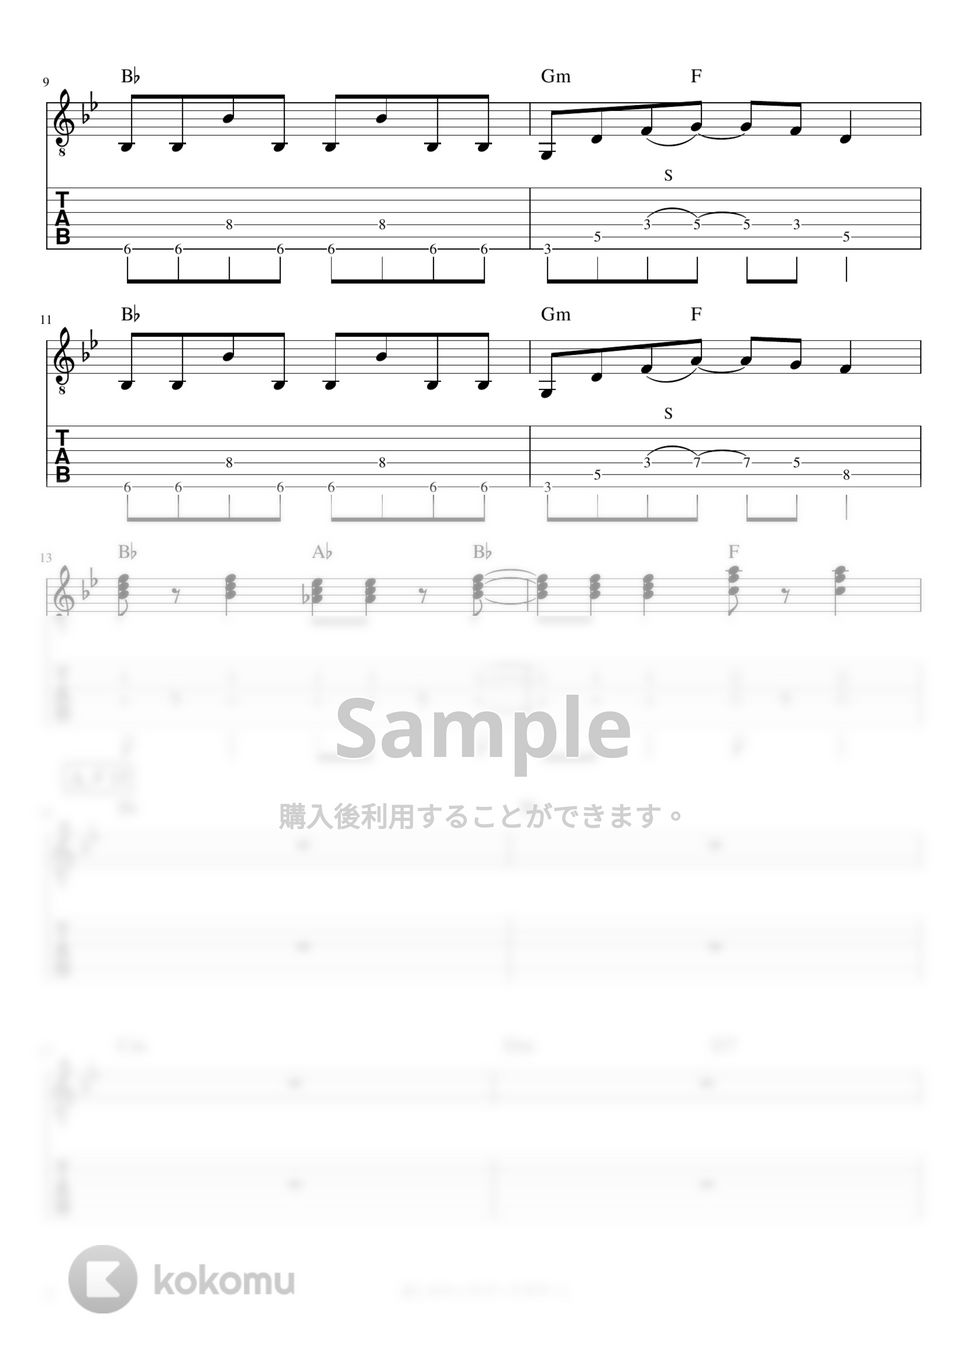 マカロニえんぴつ - 哀しみロック (リードギター) by J-ROCKチャンネル